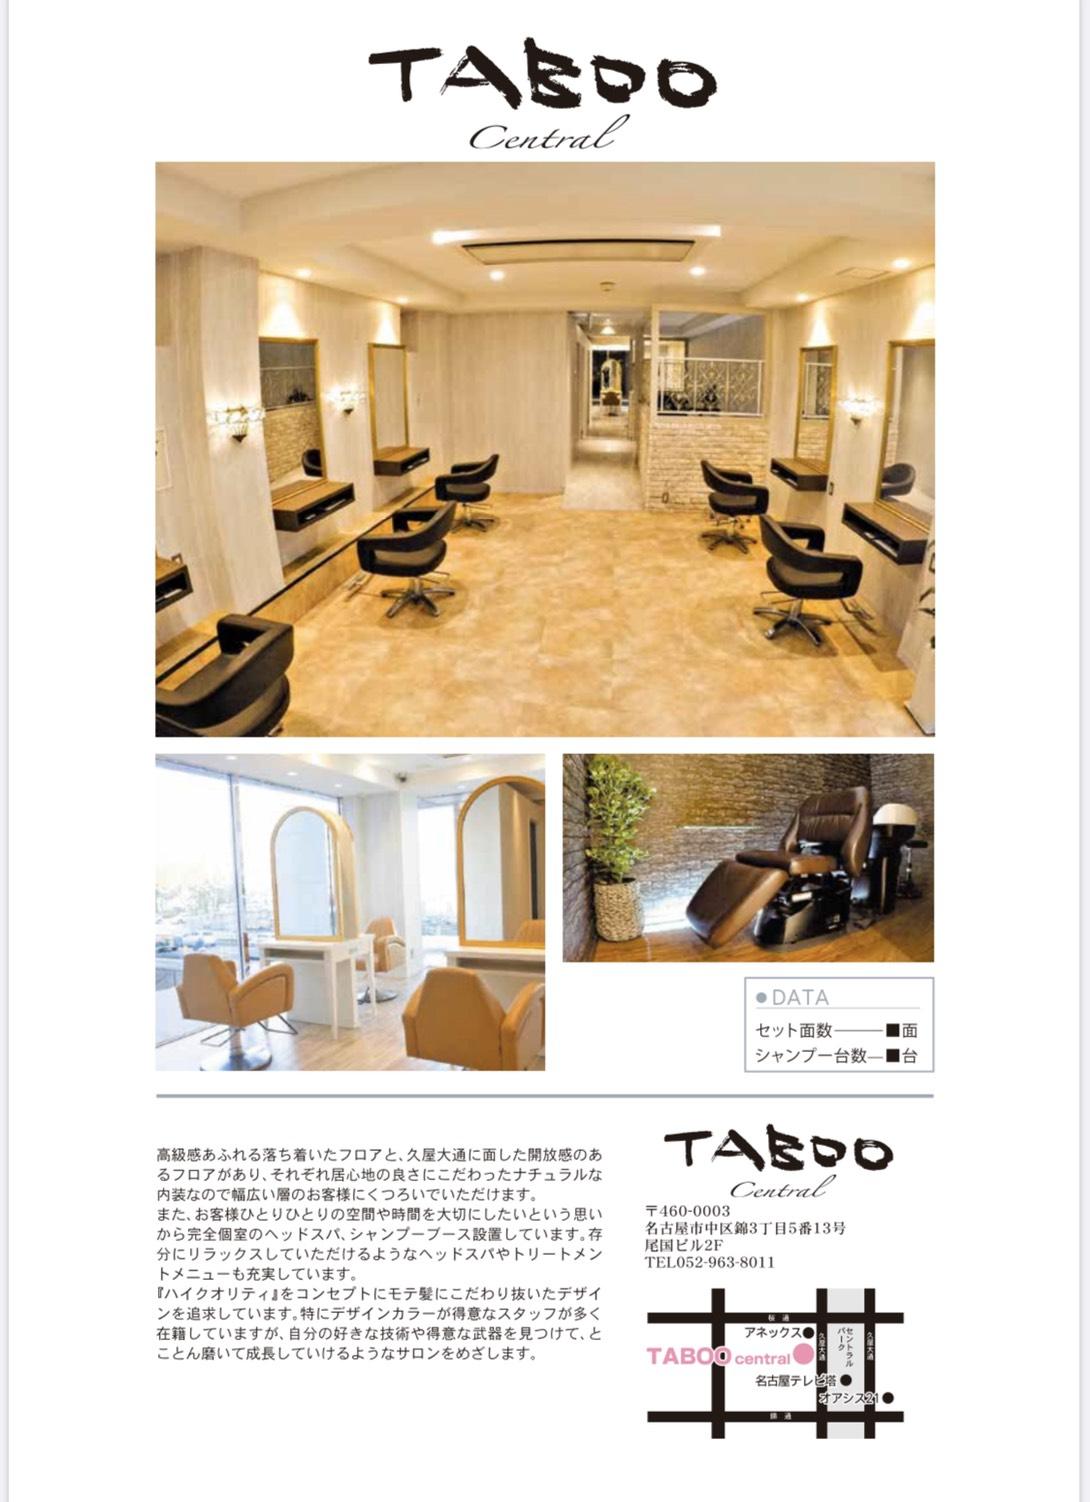 TABOO Central店☆アシスタント